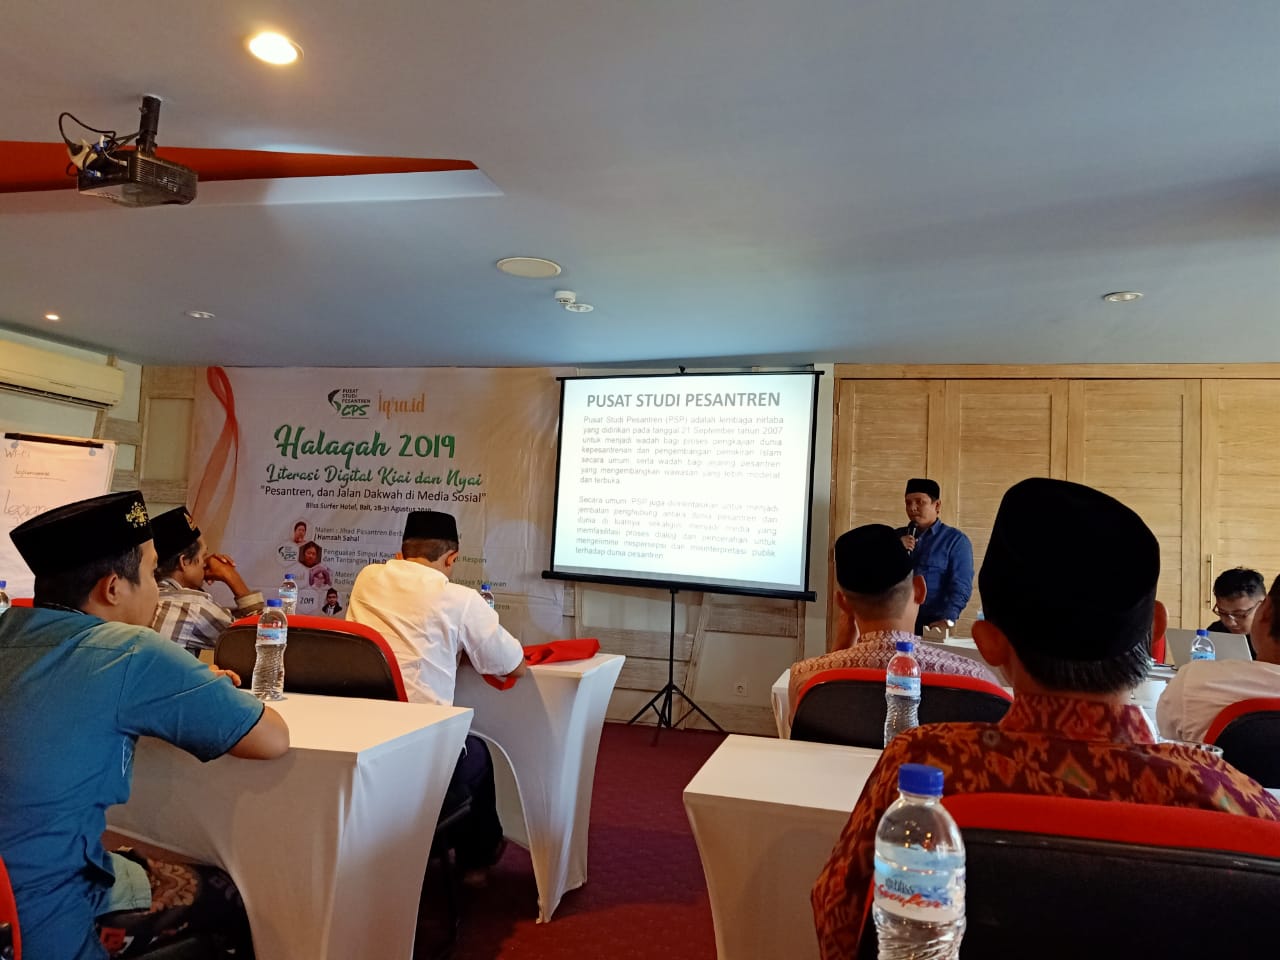 Pusat Studi Pesantren Beri Pelatihan Dakwah Online di Bali Lewat Halaqah